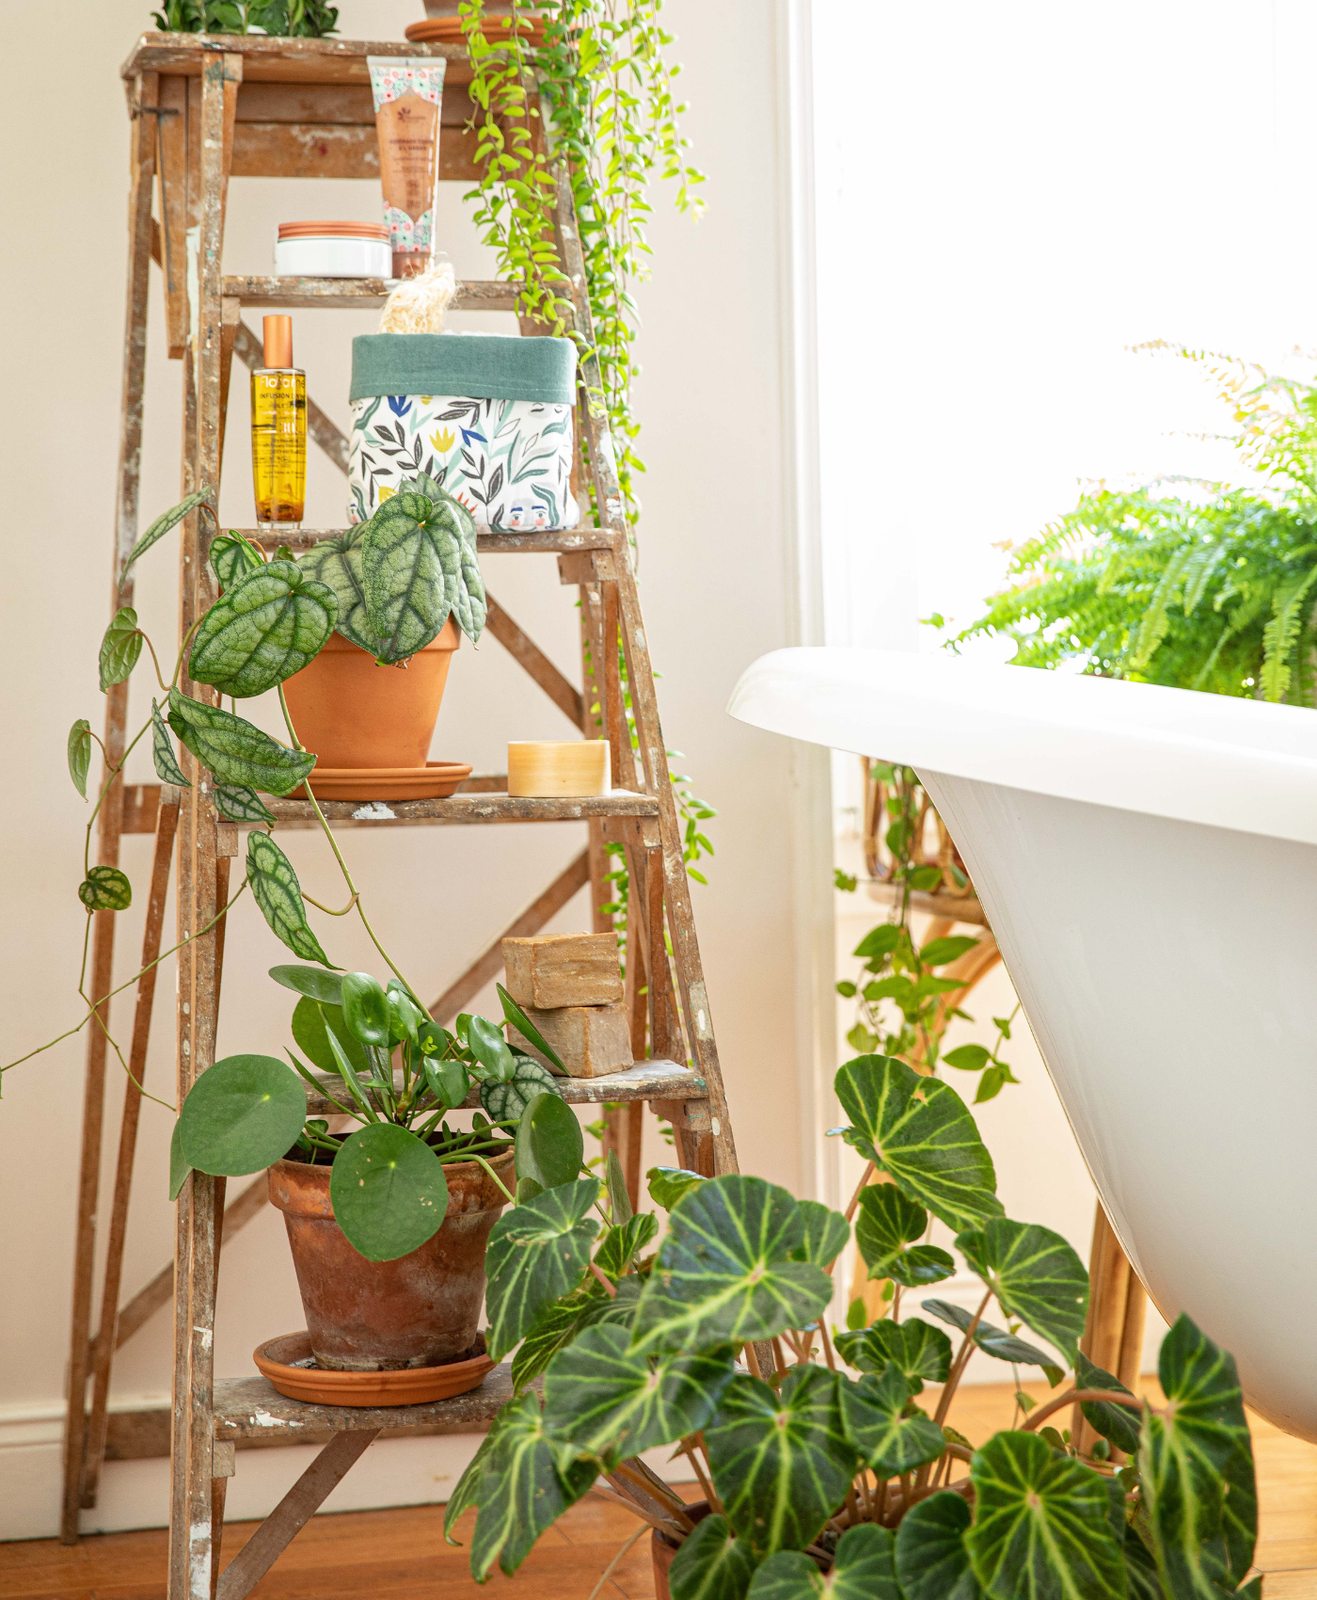 Une étagère dans une salle de bain avec des plantes et produits bio dessus